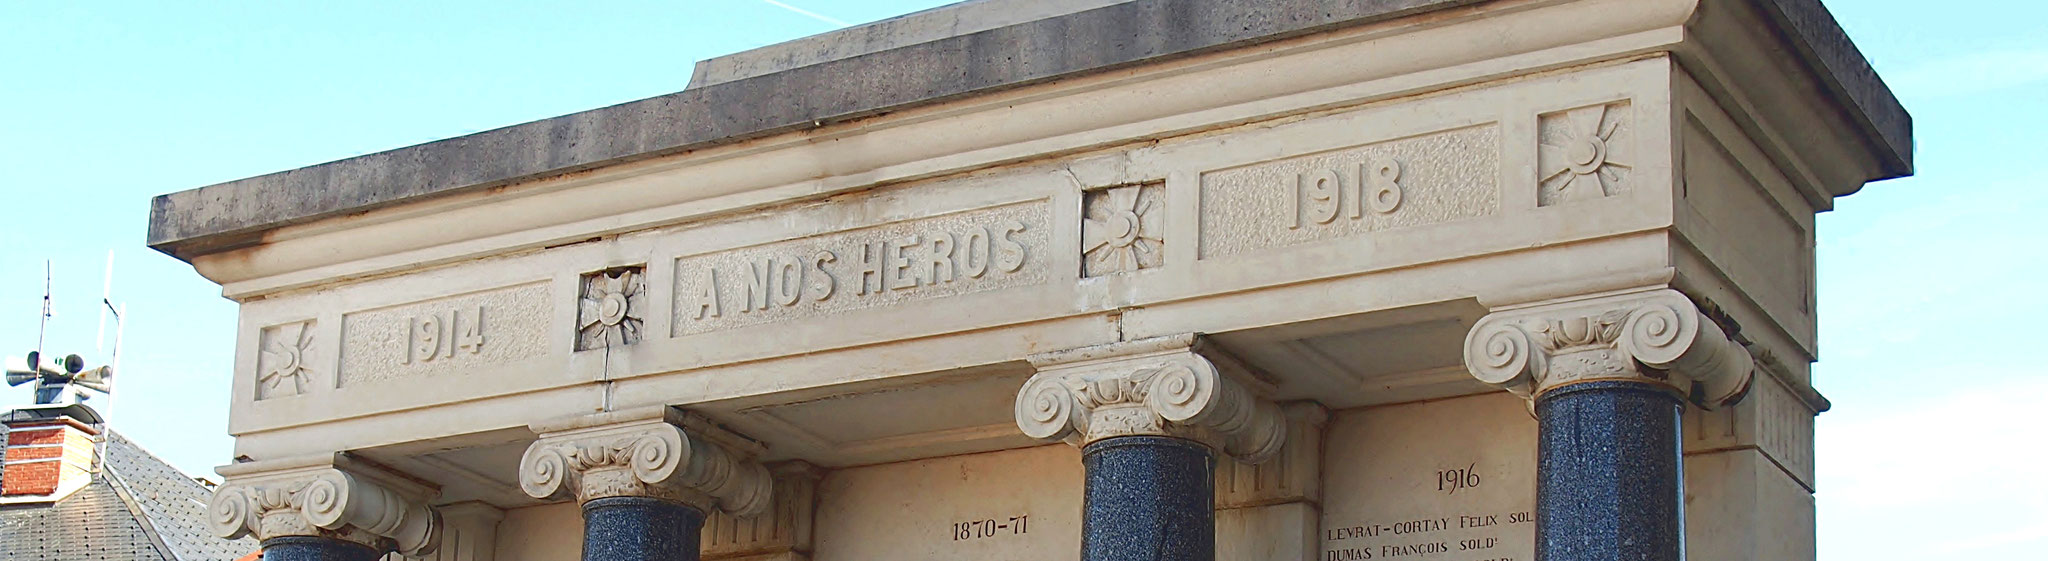 Fronton du Monument aux Morts de Champdor